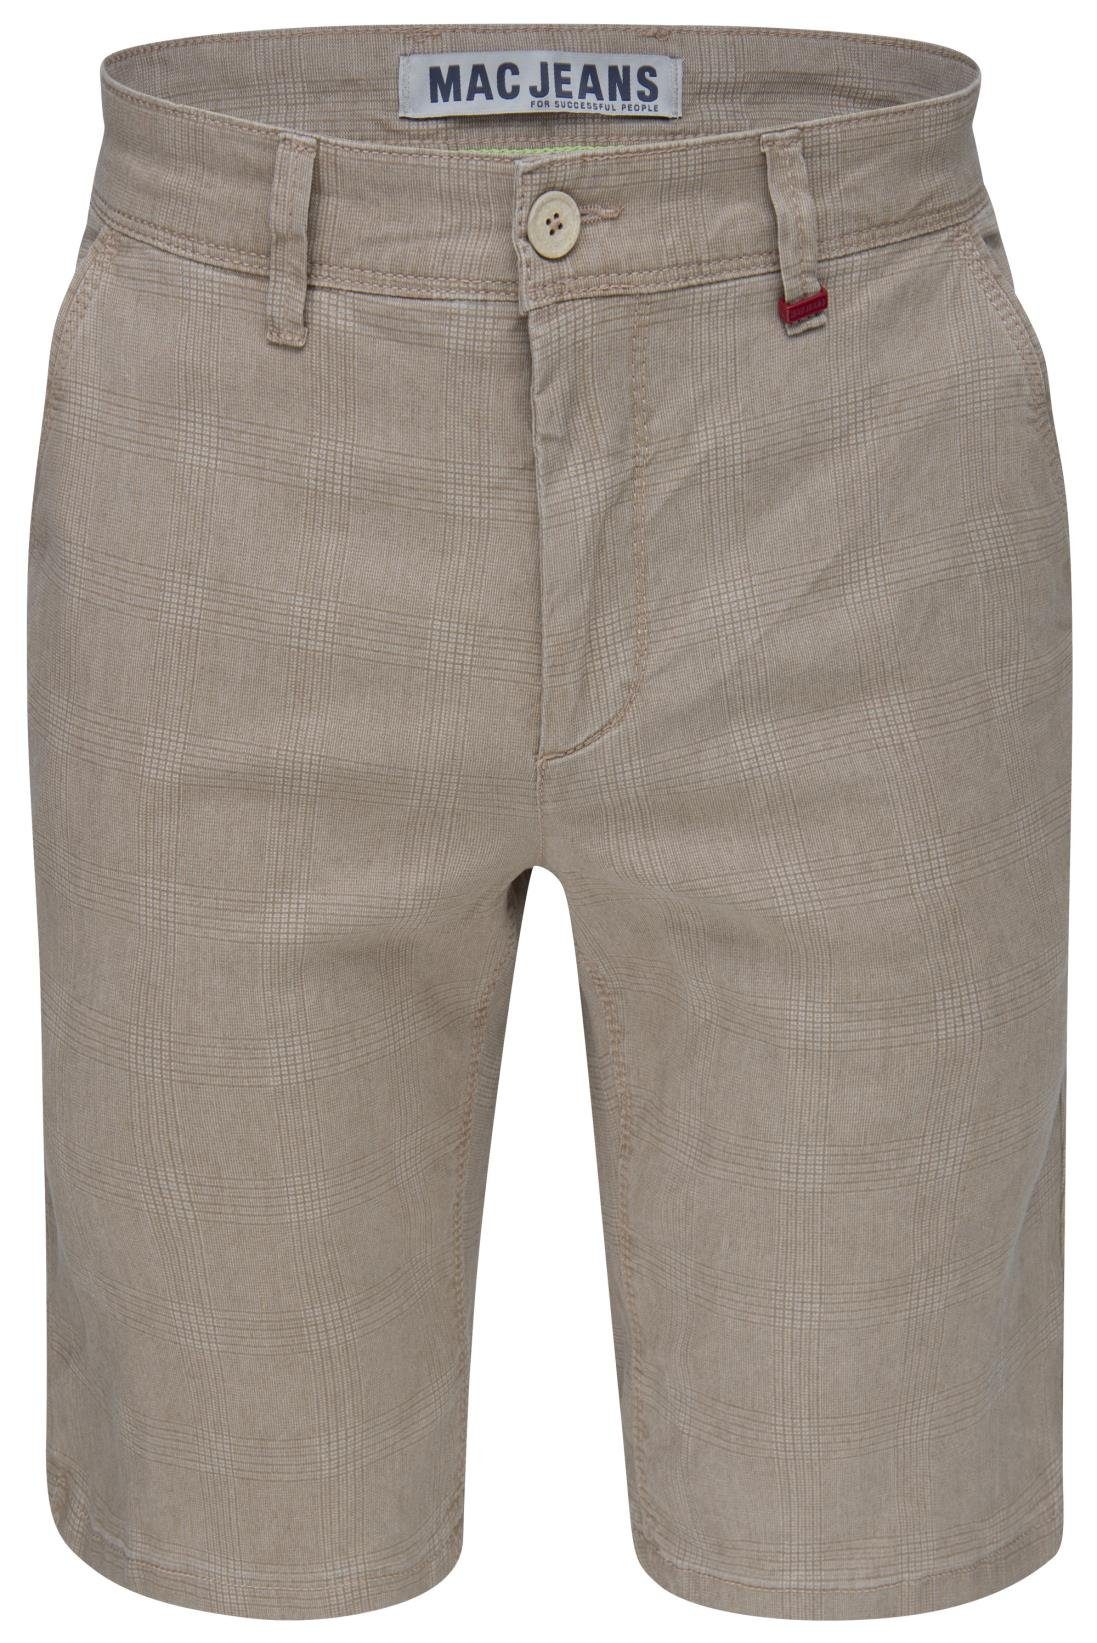 MAC 5-Pocket-Jeans MAC LENNY BERMUDA pattern beige 6392-00-0654L-203K